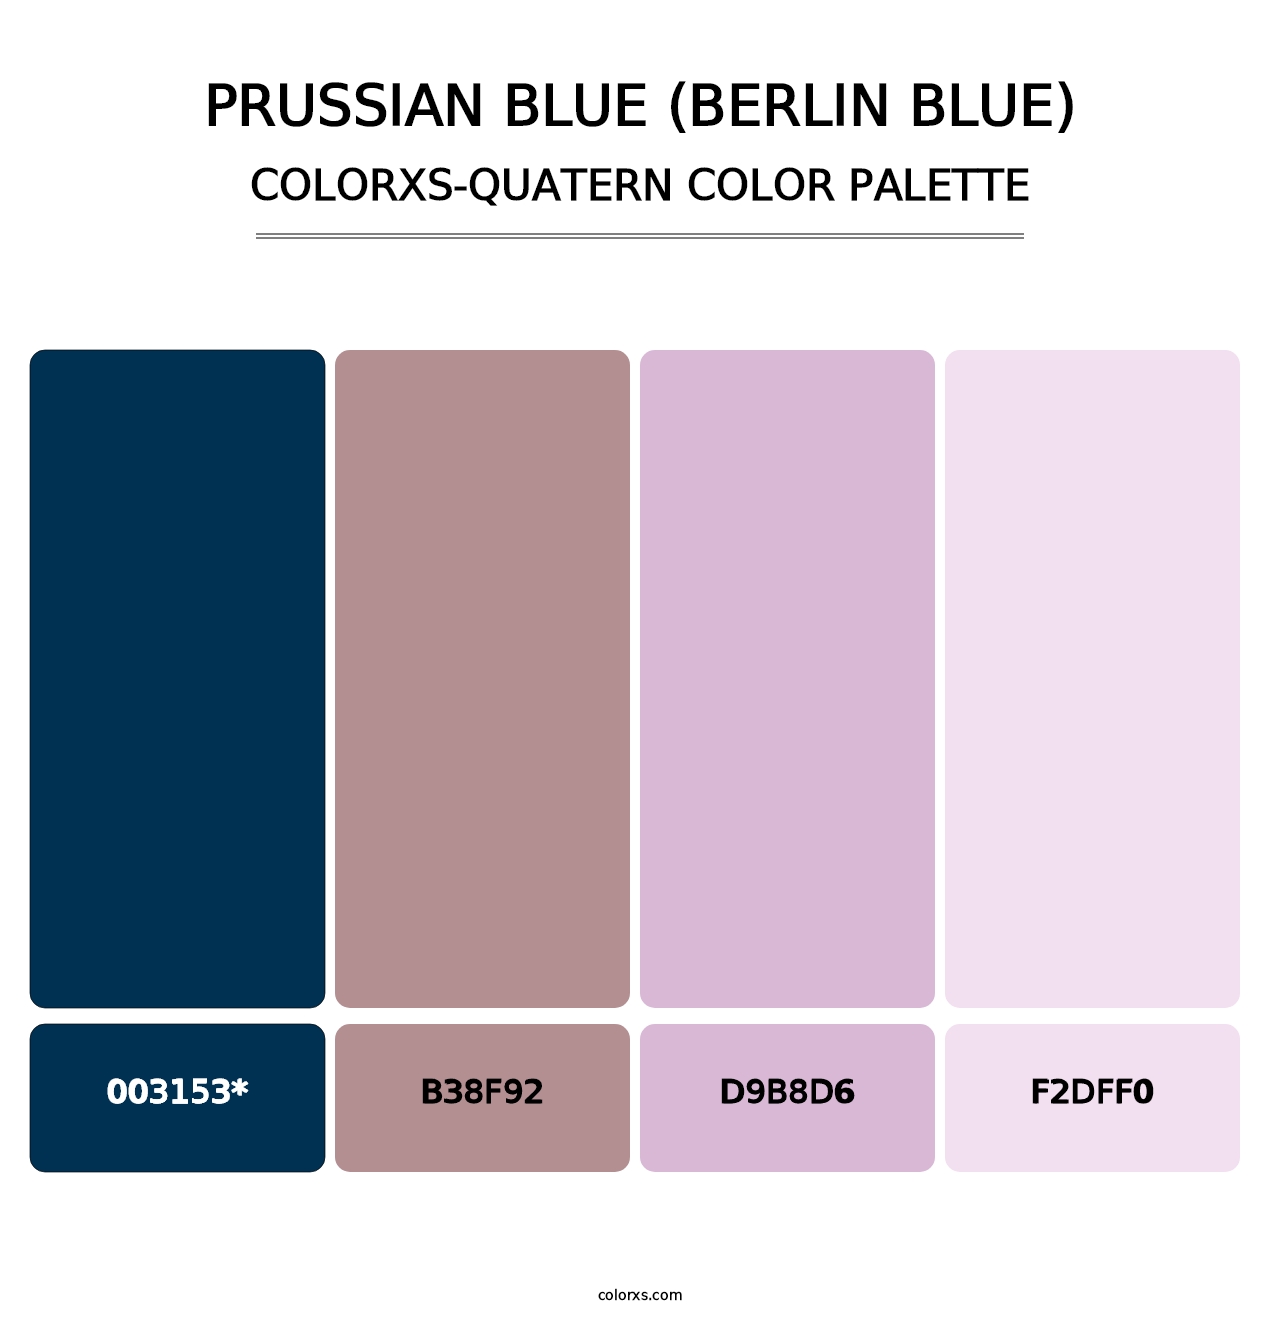 Prussian Blue (Berlin Blue) - Colorxs Quatern Palette